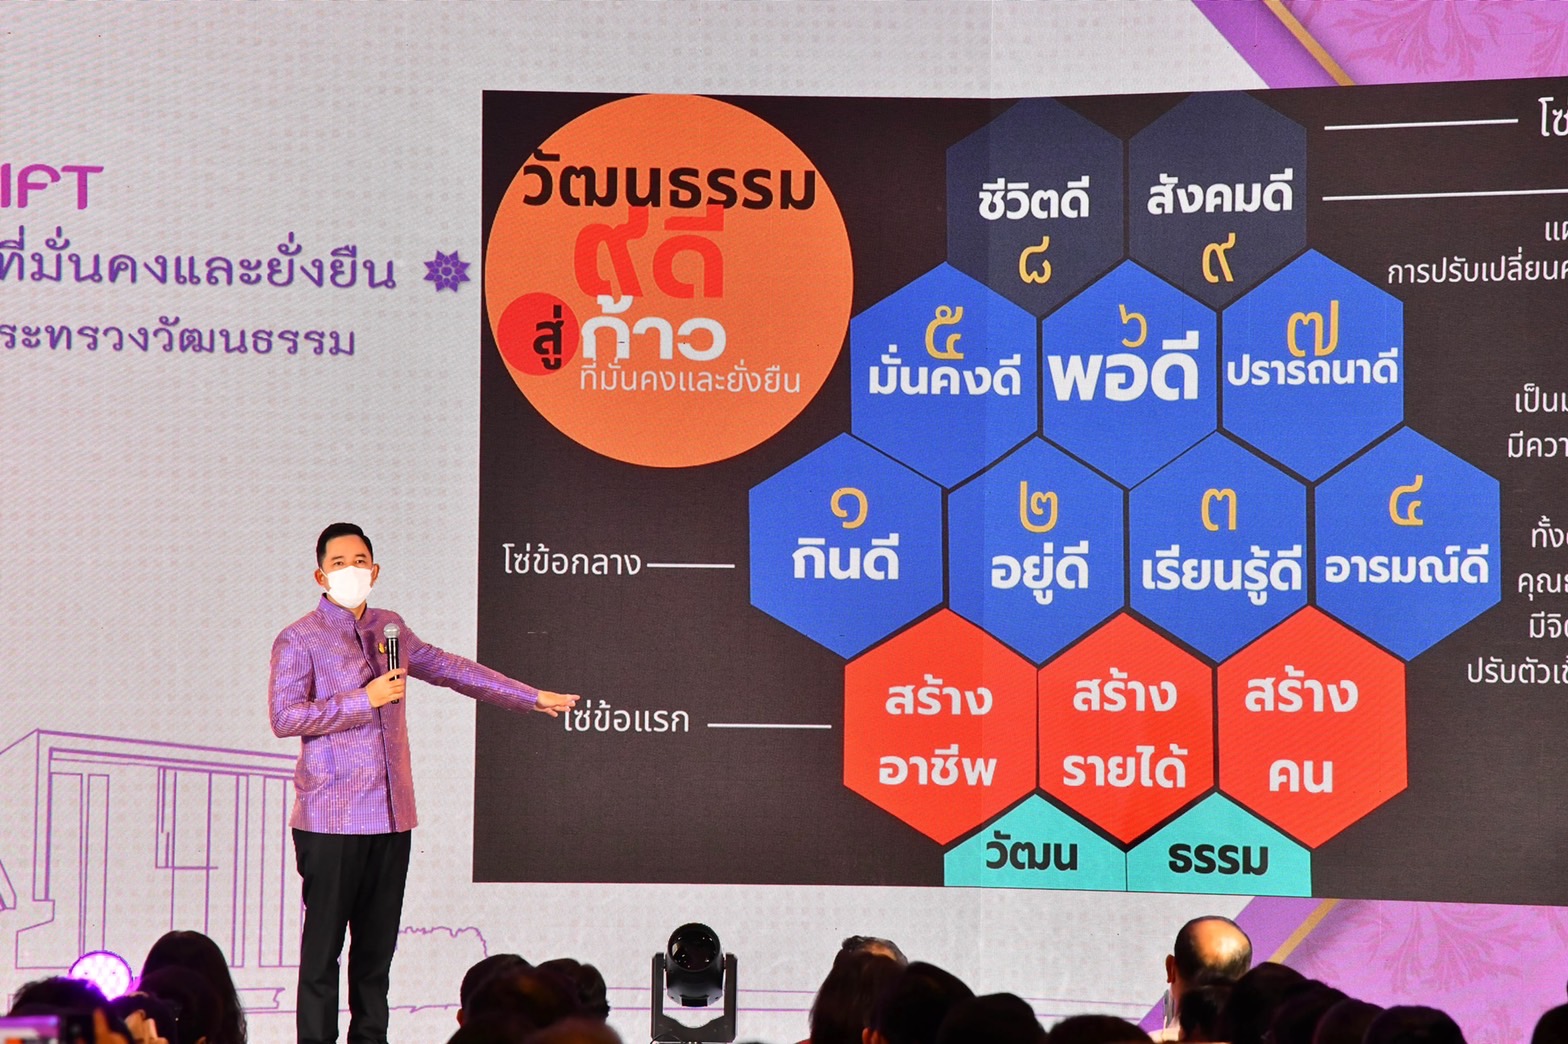 วธ.ฟิตปี 66 ชูธง Restart ประเทศไทยขับเคลื่อนสังคมและเศรษฐกิจด้วยวัฒนธรรม เร่งพลิกฟื้นเศรษฐกิจและสังคมสู่ความมั่นคงและยั่งยืน